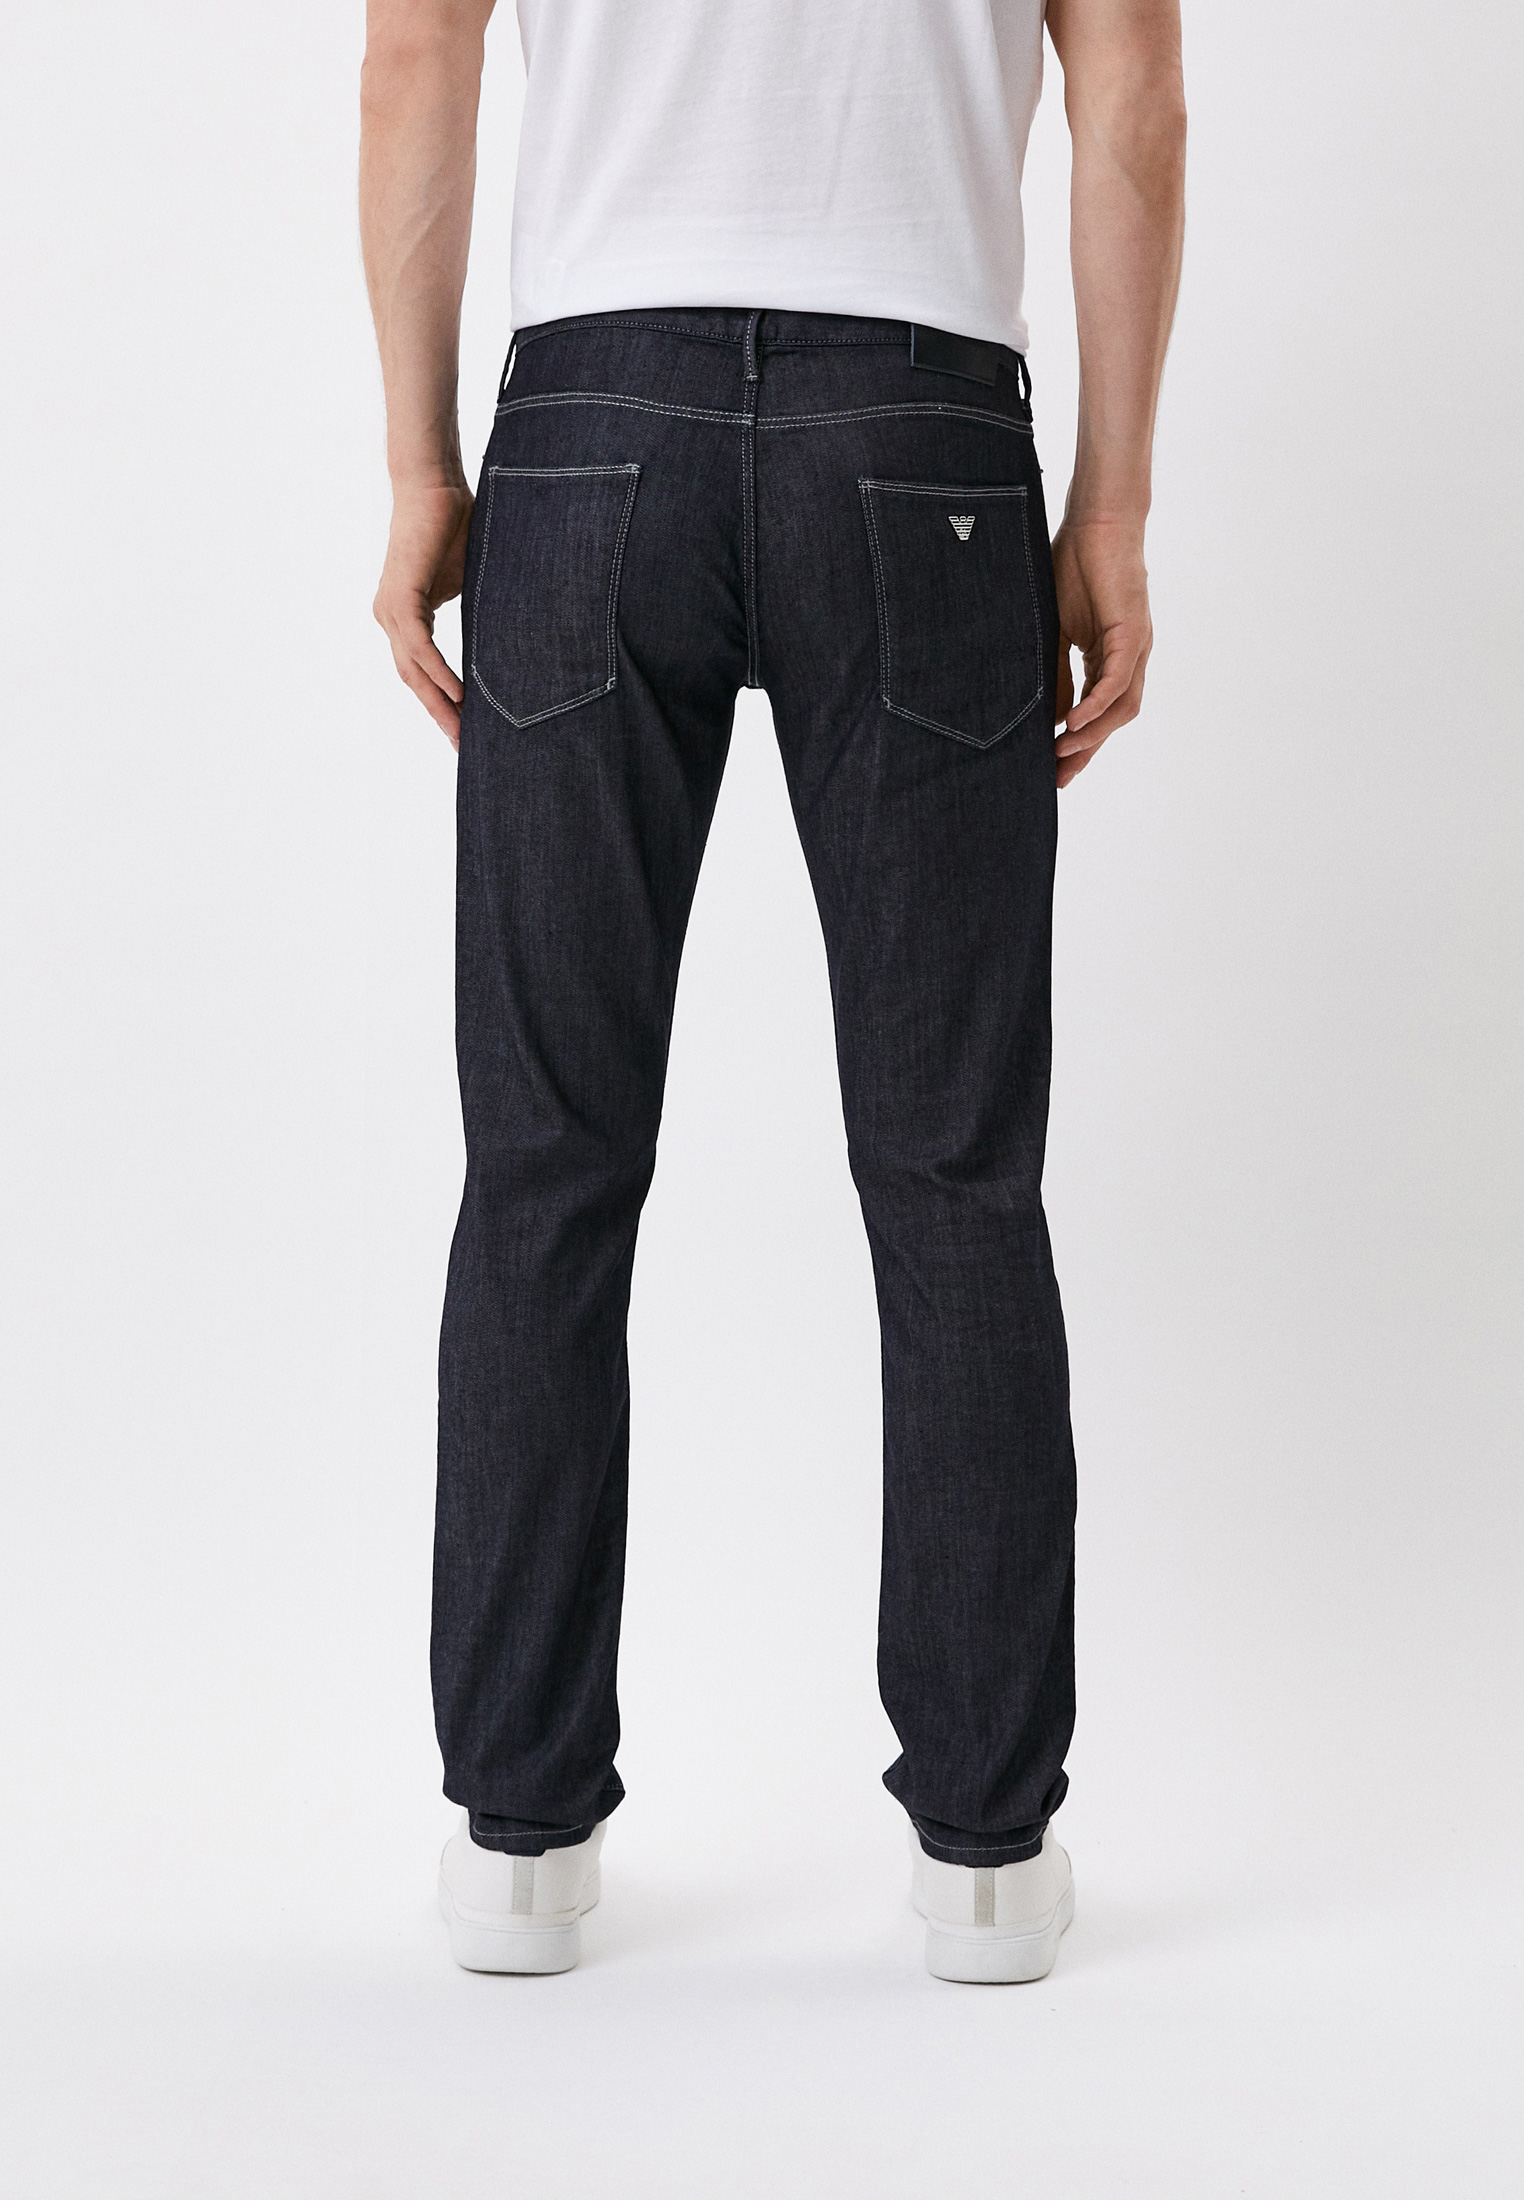 Мужские зауженные джинсы Emporio Armani (Эмпорио Армани) 8N1J06 1D85Z: изображение 6